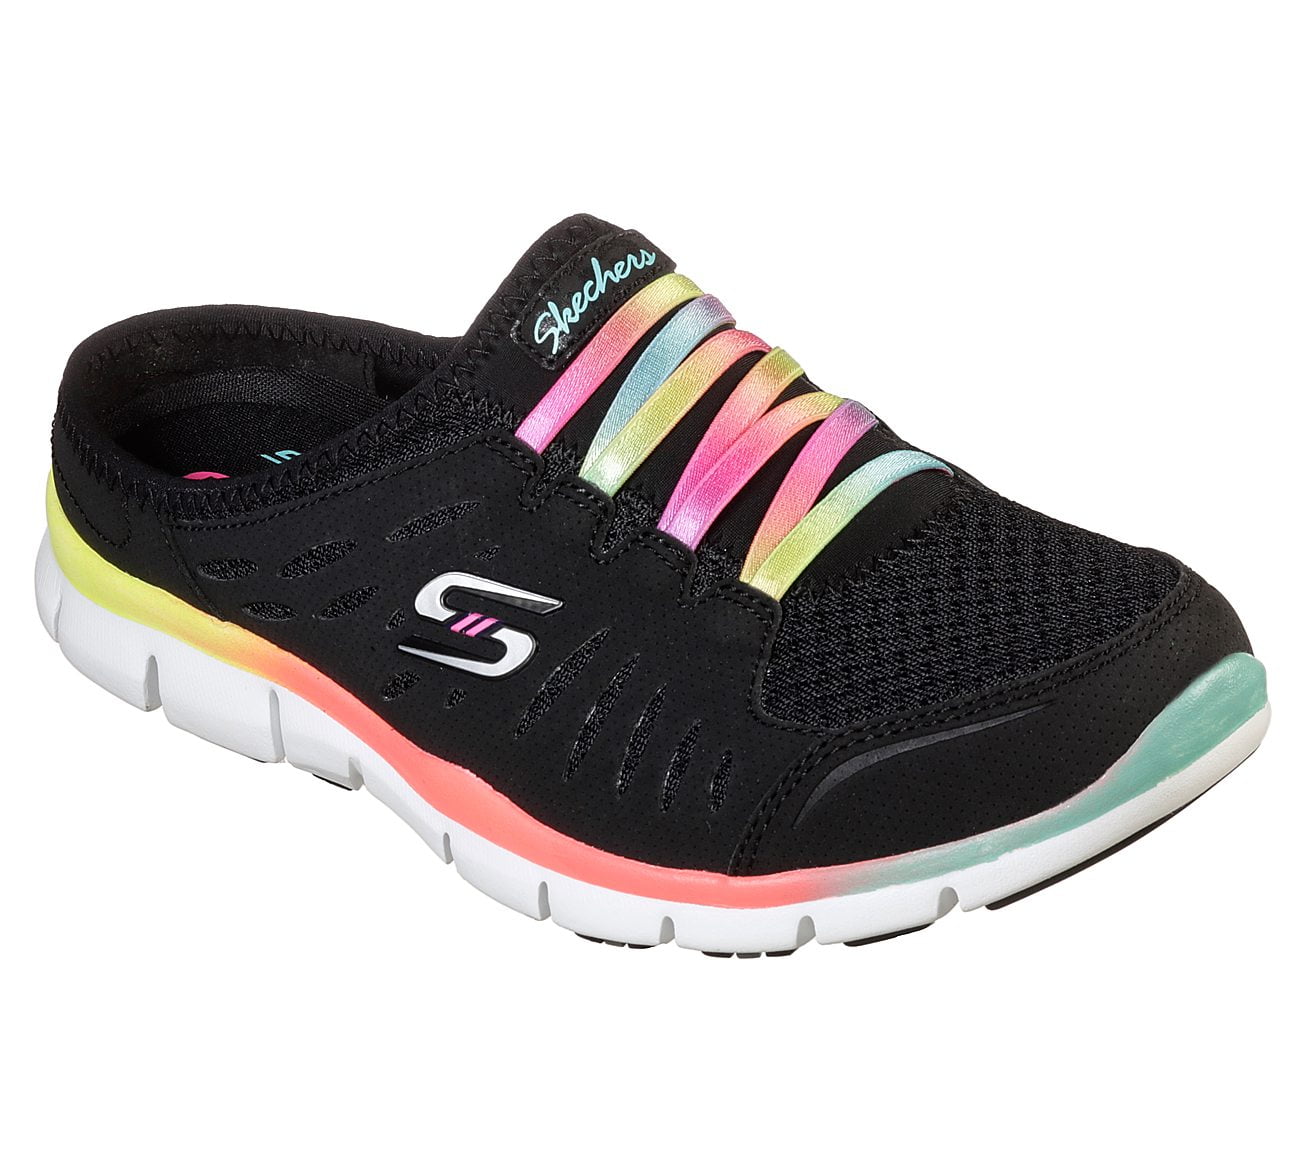 Skechers Sport No Limits Slip-on Sneaker, Black Multi, m - Walmart.com